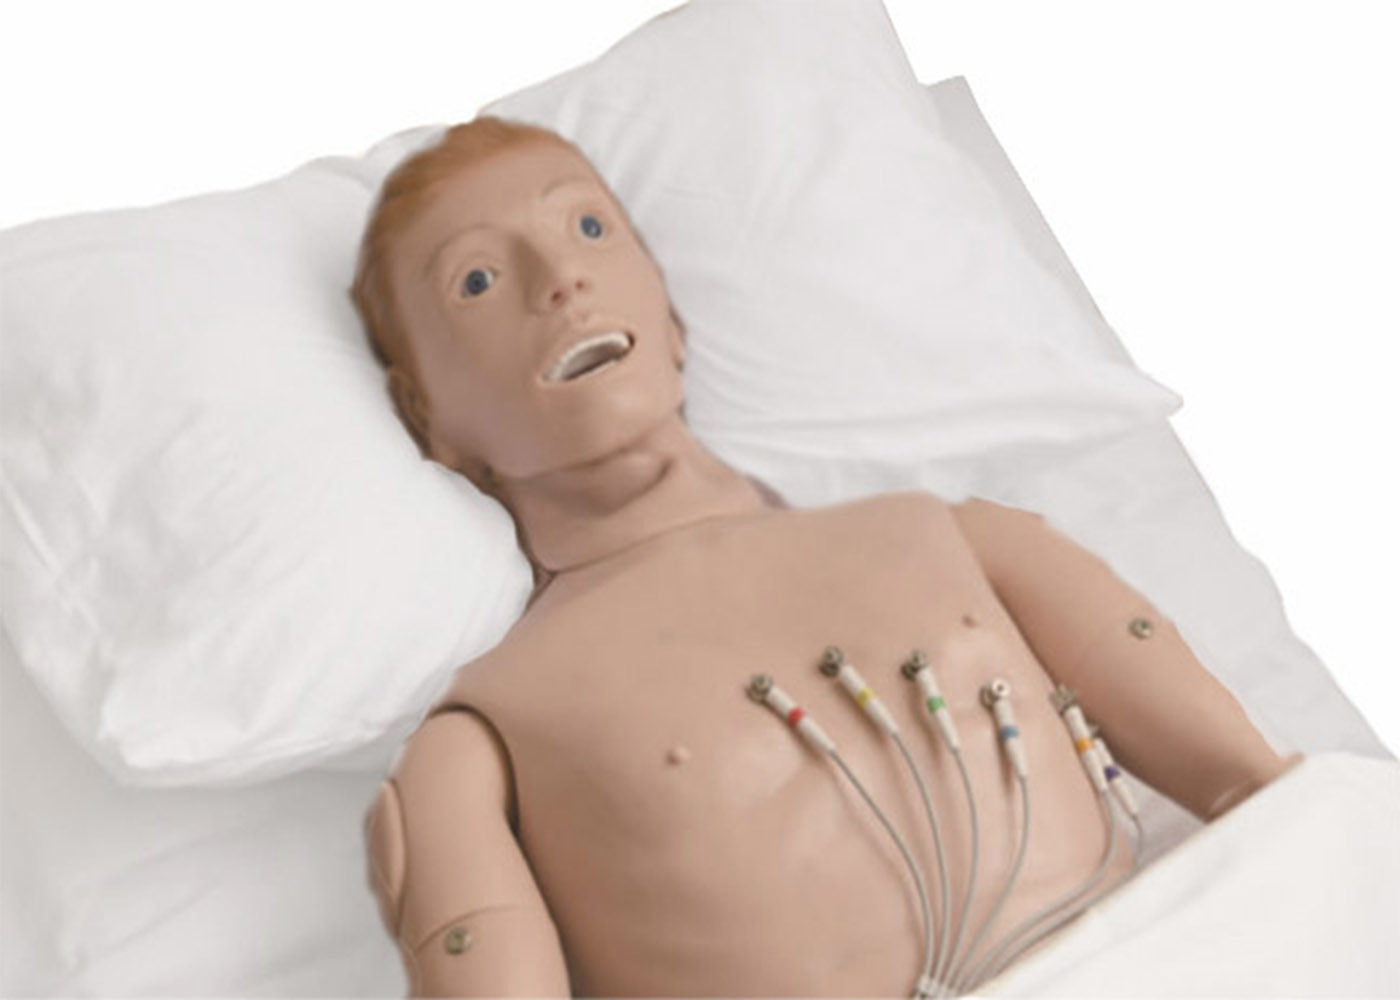 High Tech Elastic PVC Elektrokardiogram Simulasi Auskultasi untuk Rumah Sakit Belajar EKG